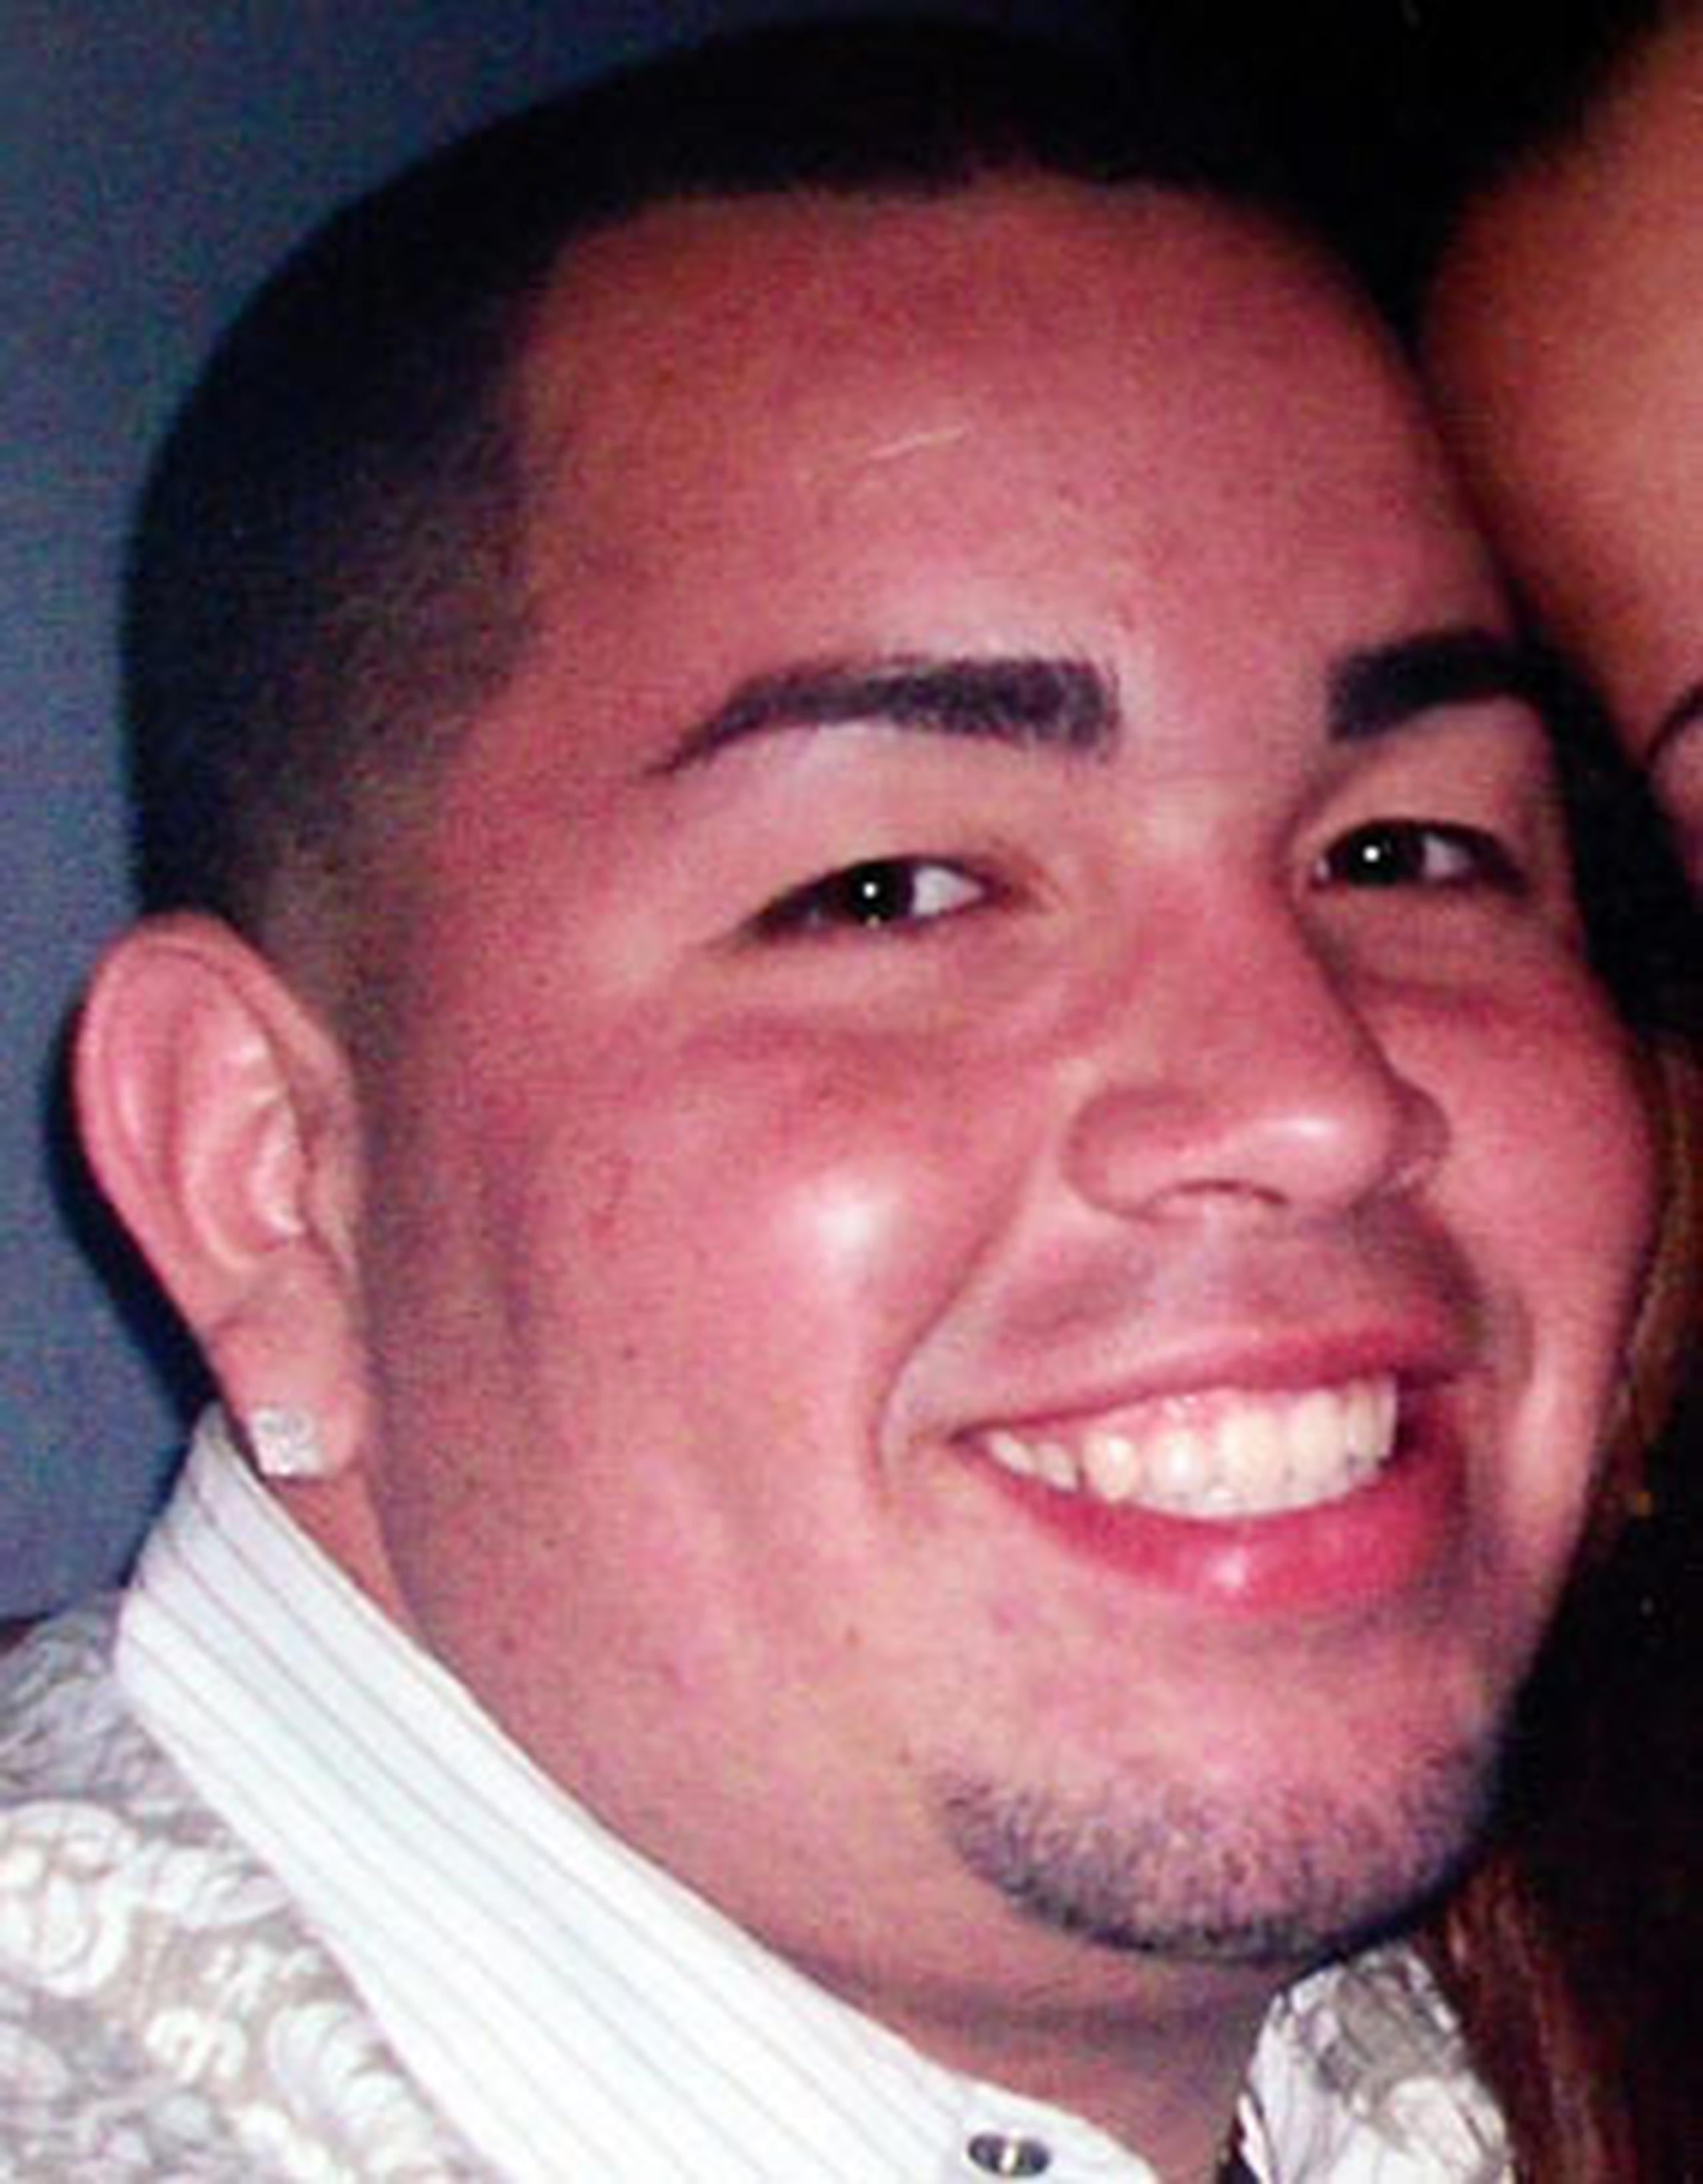 Steven Cruzado Torres, de 24 años, murió luego de recibir cuatro impactos de bala en la espalda mientras jugaba baloncesto en la cancha El Mangó, en el barrio Minillas de San Germán. (Suinistrada)